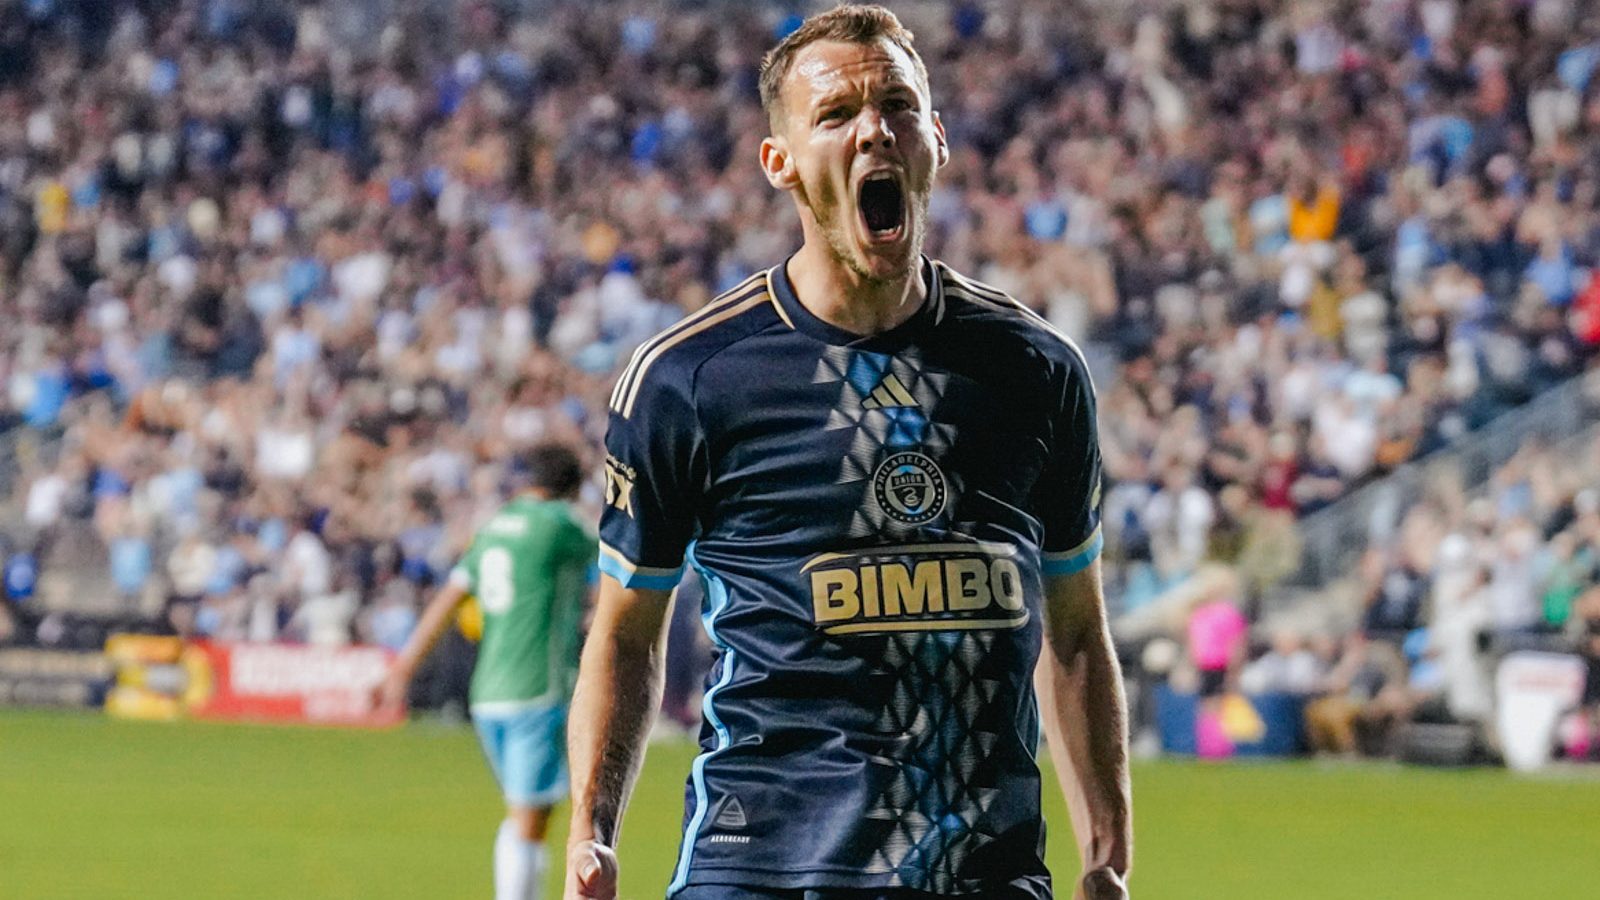 Légiósok: Gazdag ismét betalált az MLS-ben, ezzel gólrekorder lett klubjában a magyar válogatott játékos - videó